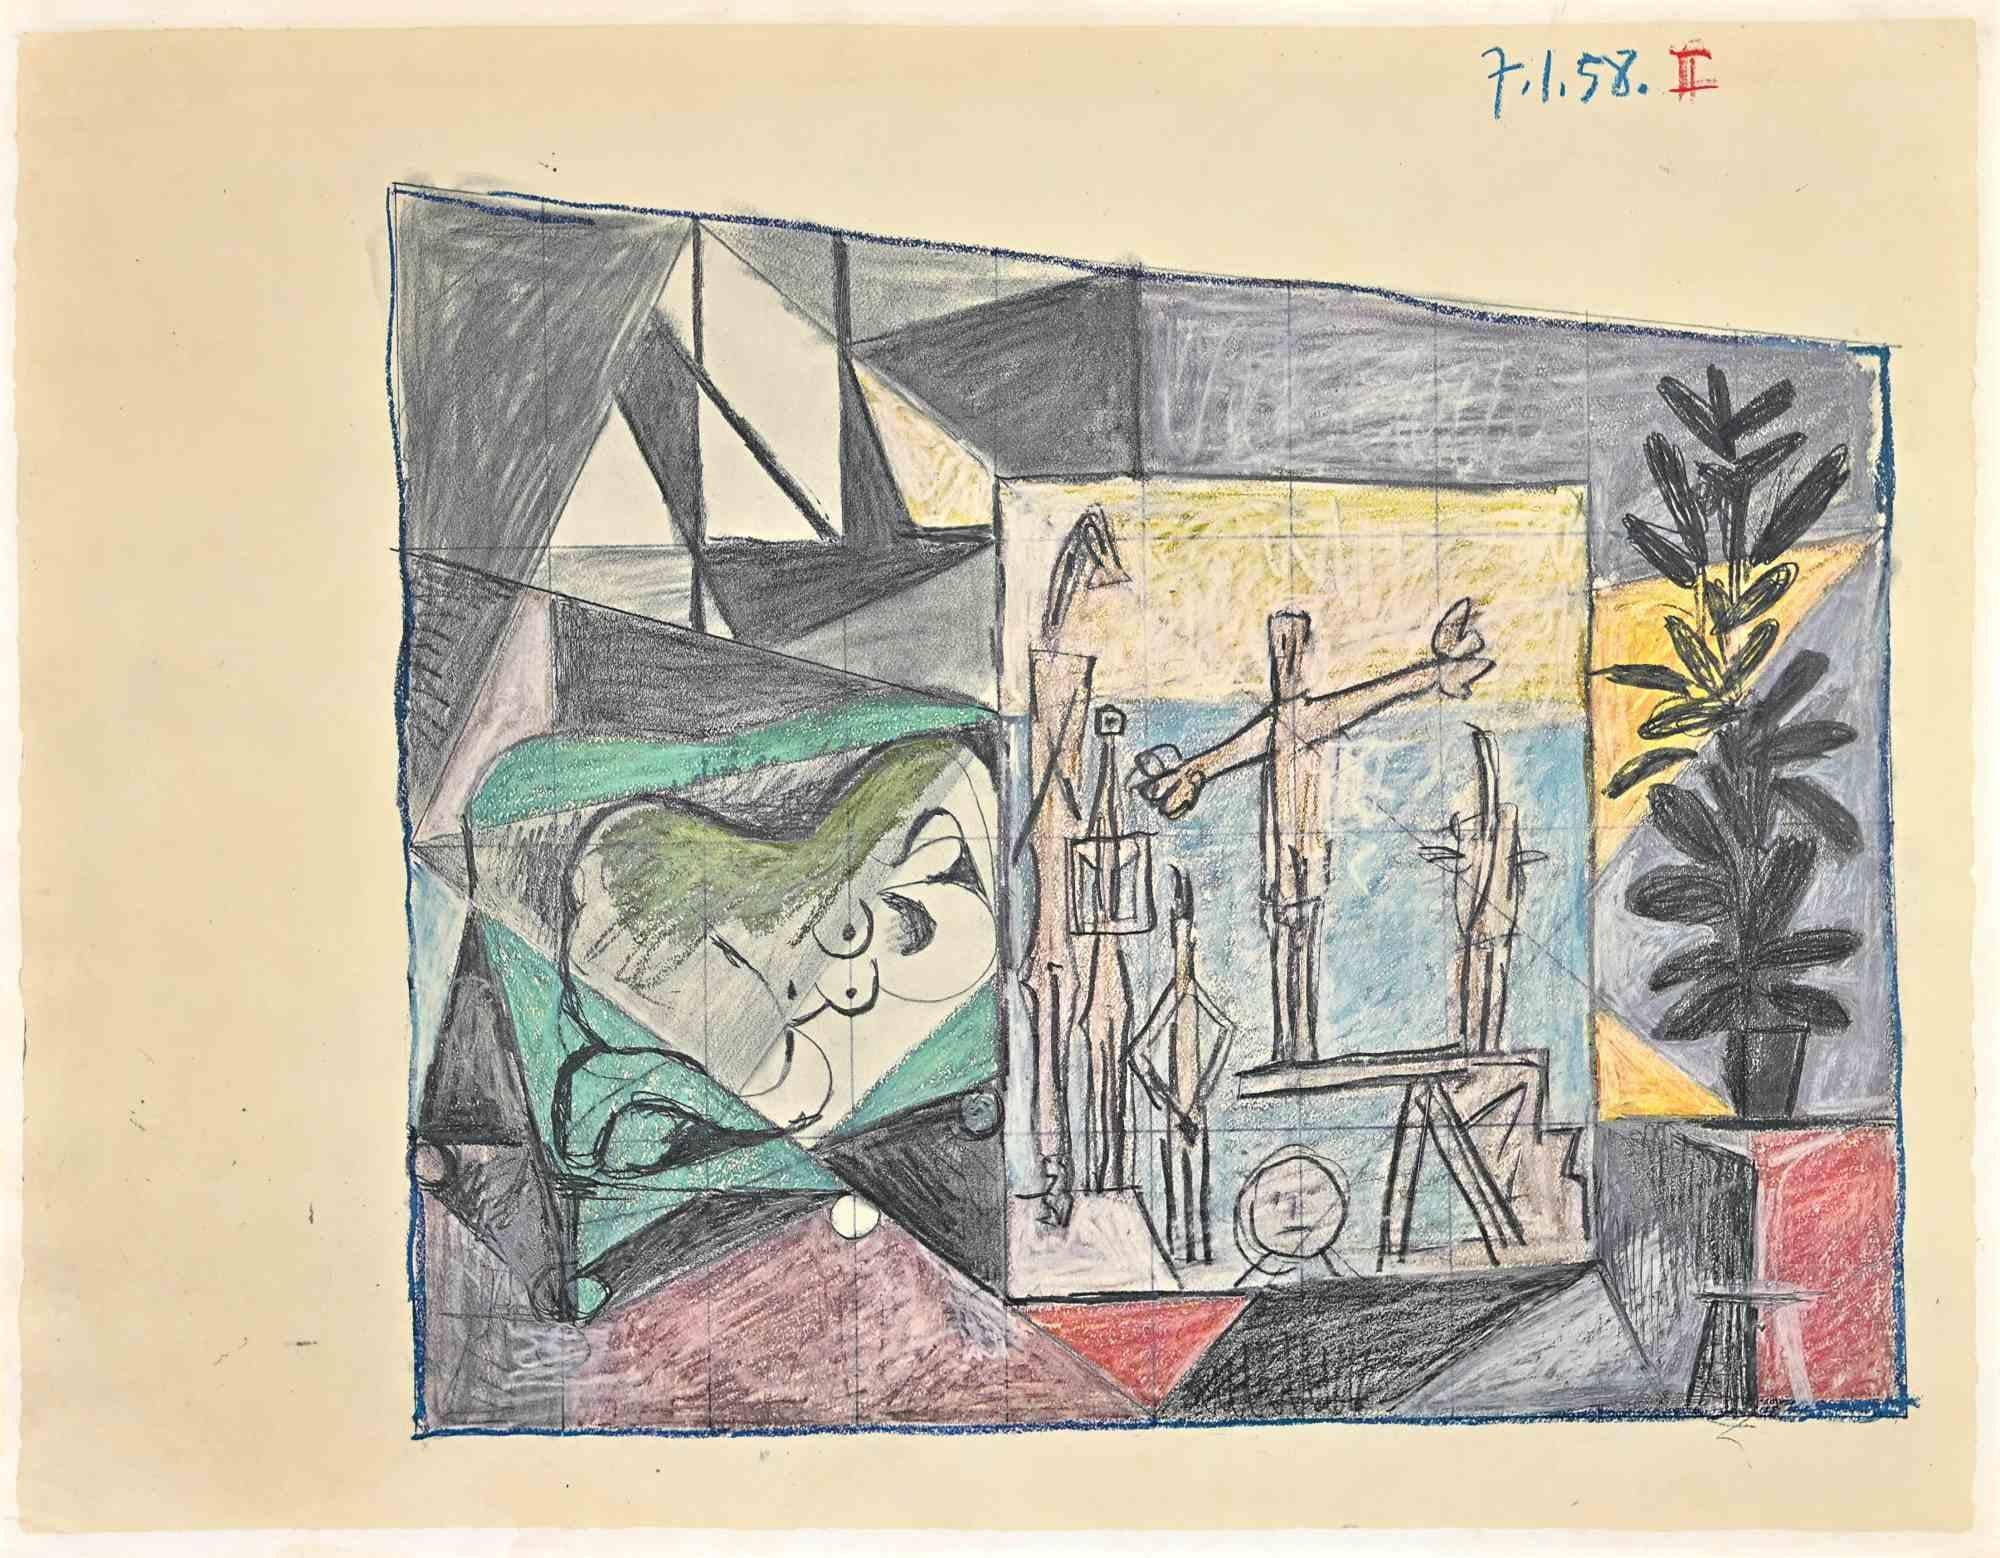 Das Innere ist eine Vintage-Fotolithographie nach Pablo Picasso, nach der Originalzeichnung von 1958.

Sehr guter Zustand.

Das Kunstwerk ist in einer ausgewogenen Komposition abgebildet.

Pablo Picasso (Malaga, 1881 - Moujins, 1973) im Jahr 1973.